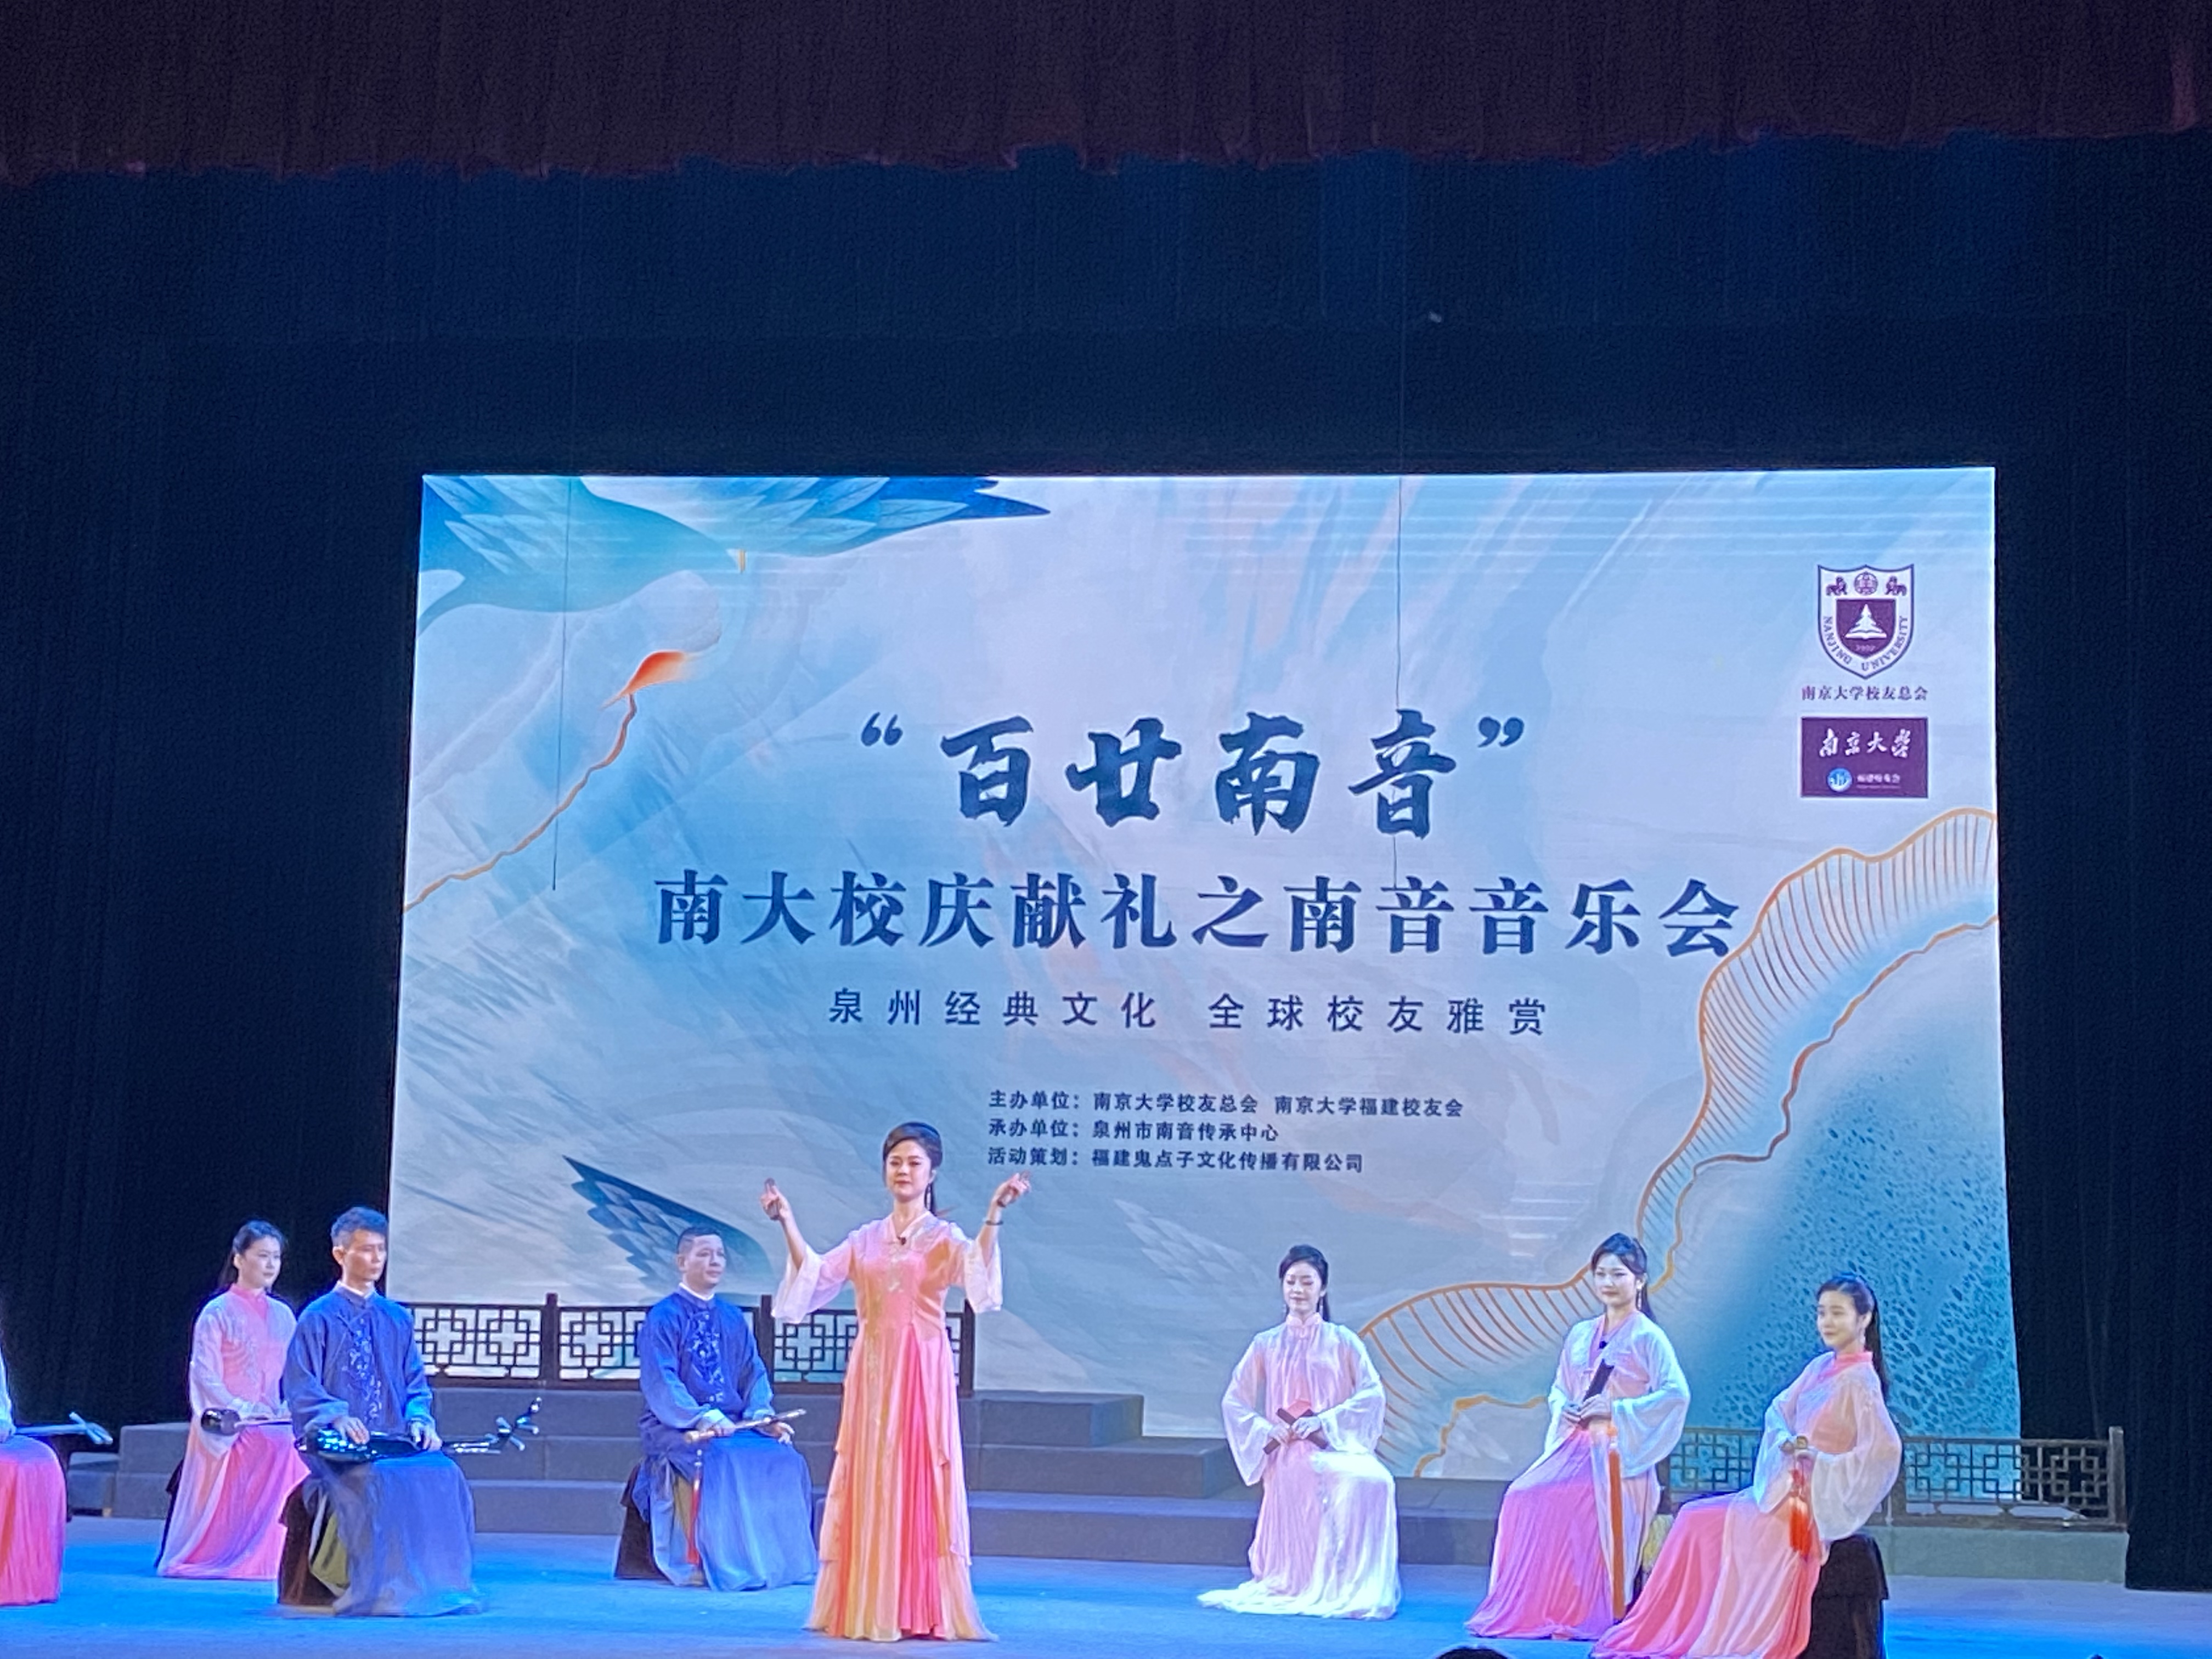 泉州南京大学环保产业研究院组织参加庆祝南京大学建校120周年活动